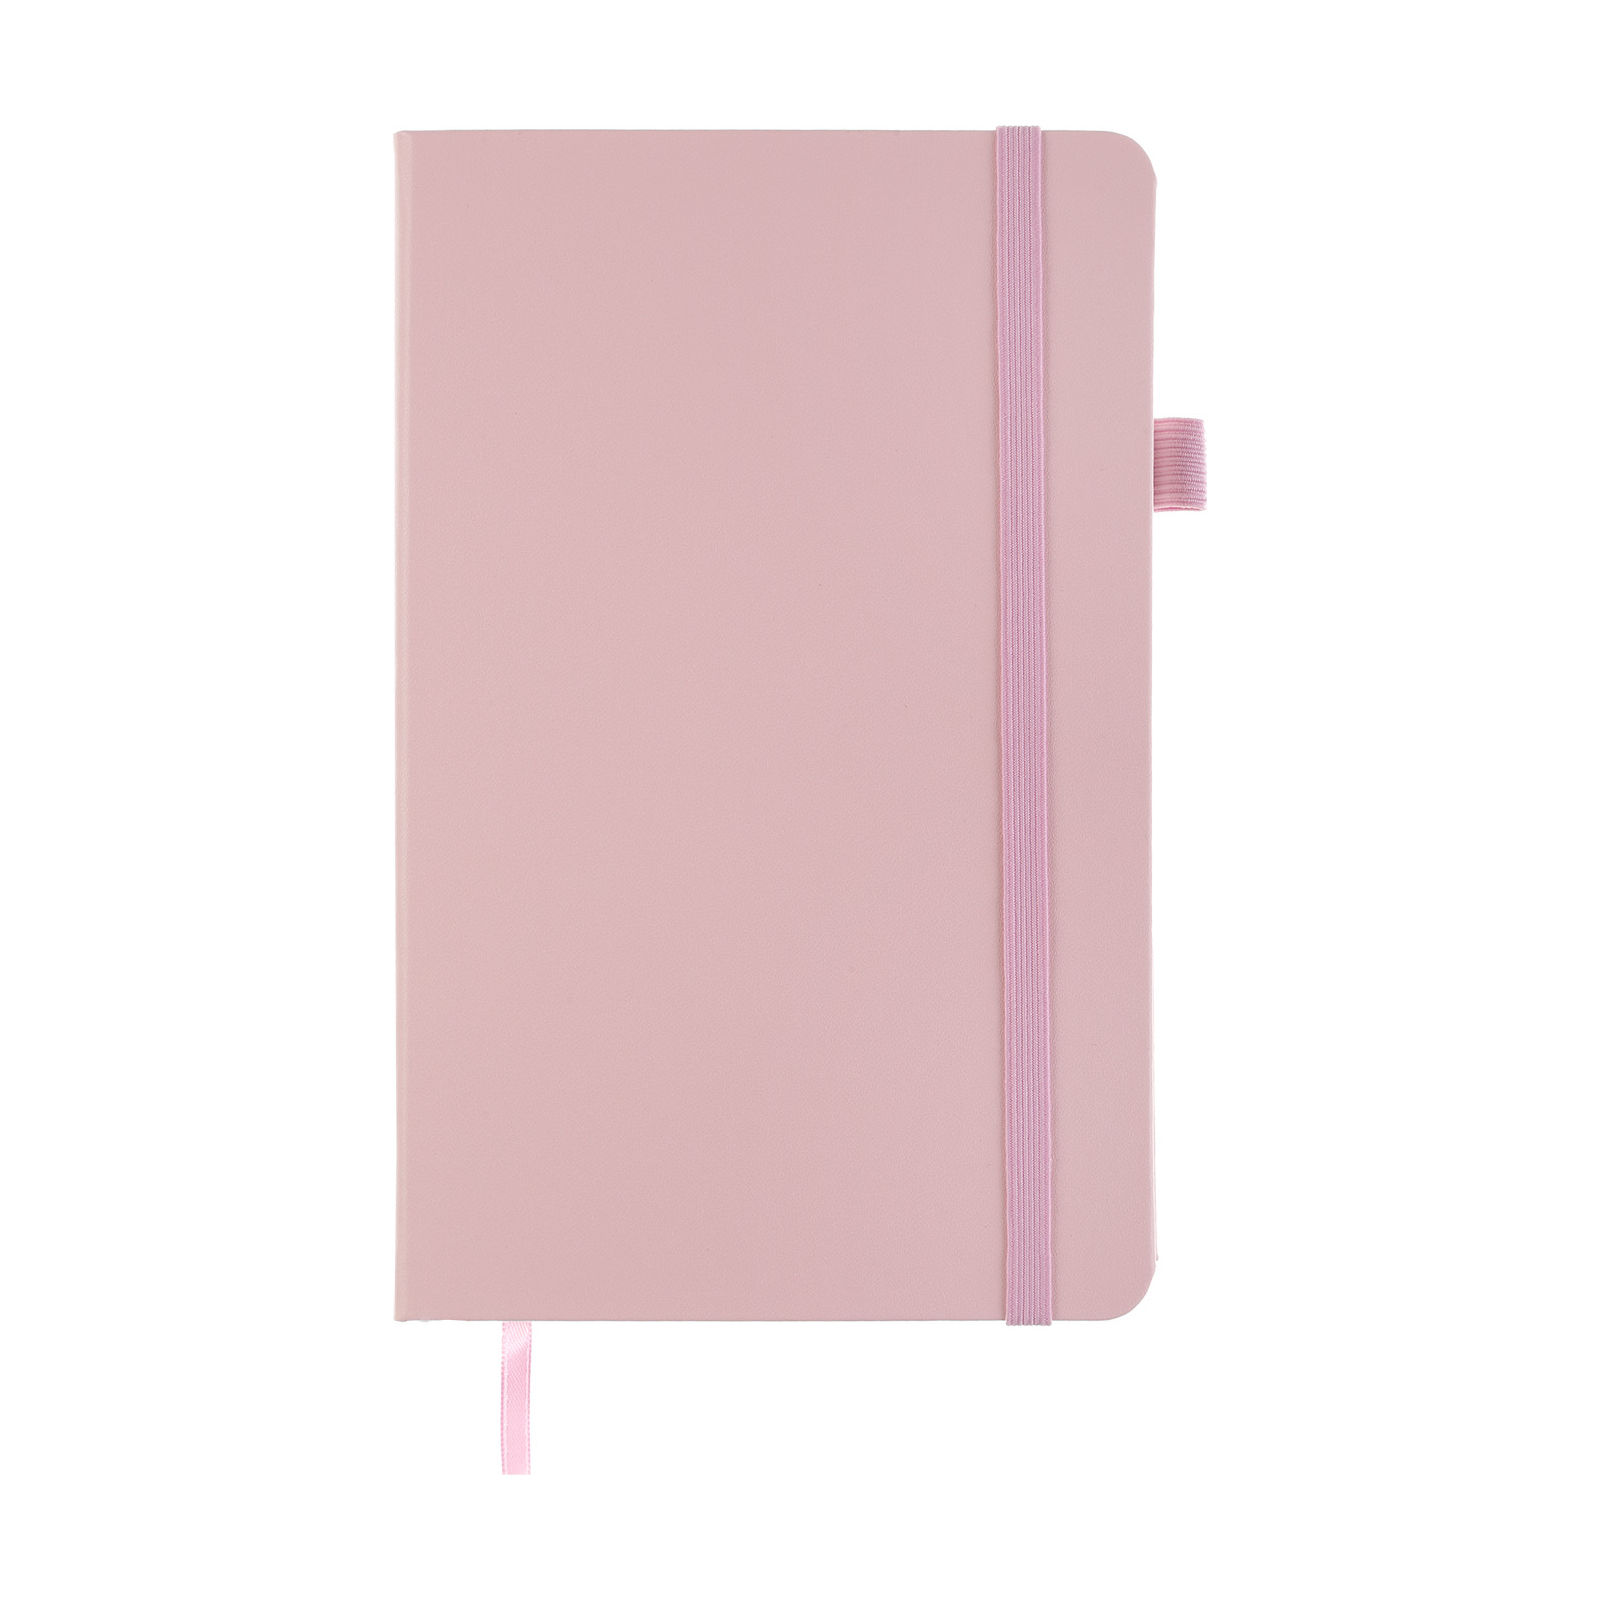 Книга записная Buromax Etalon 125x195 мм 96 листов в клетку обложка из искусственной кожи Розовая (BM.291160-10) изображение 2